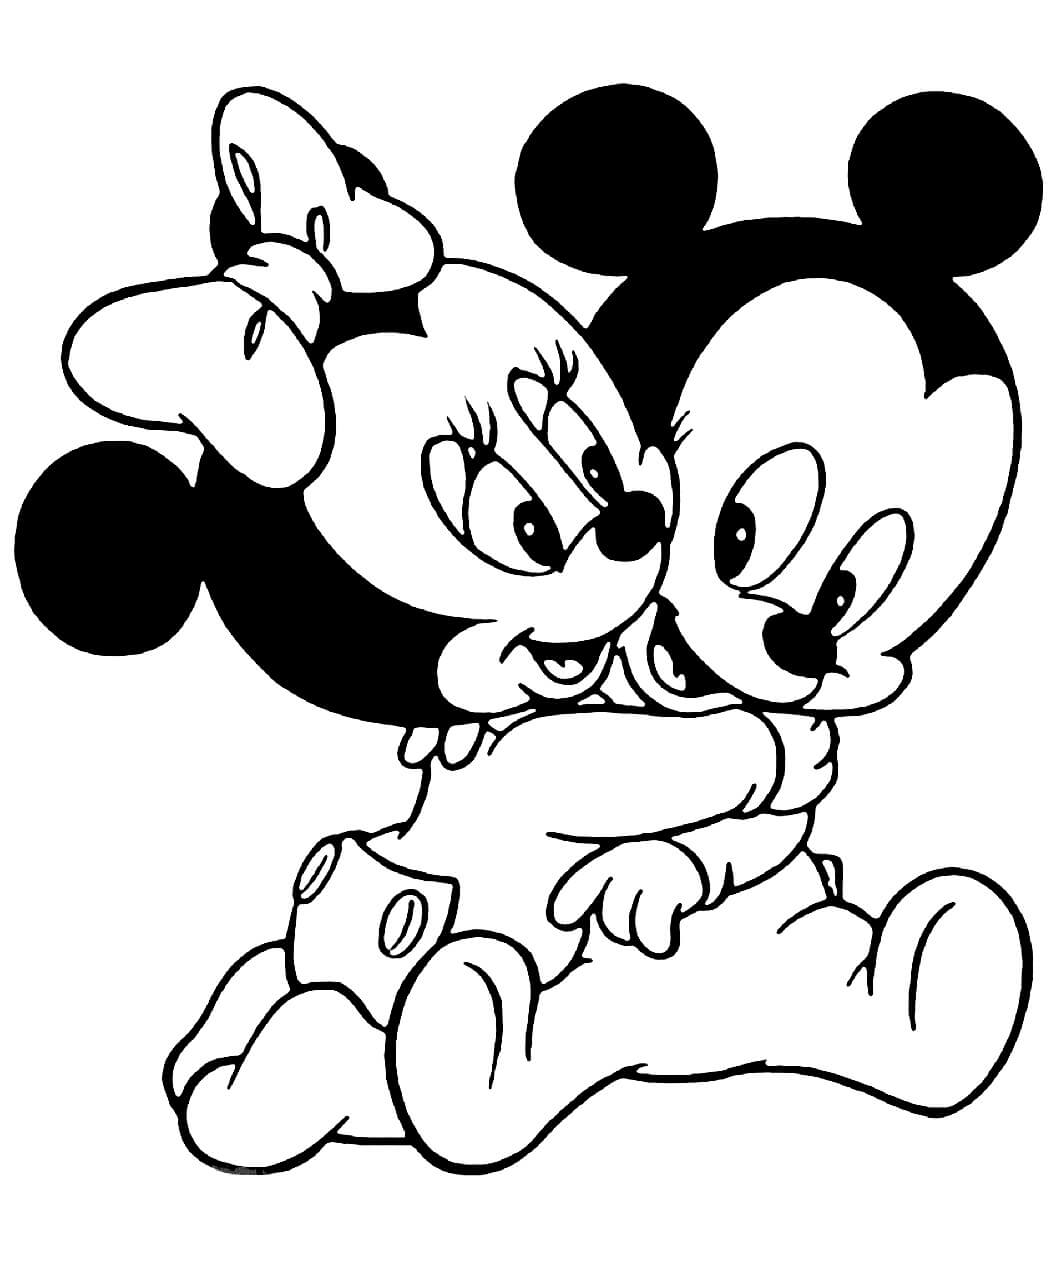 Dibujos de Bebé Minnie Mouse abrazando a bebé Mickey Mouse para colorear